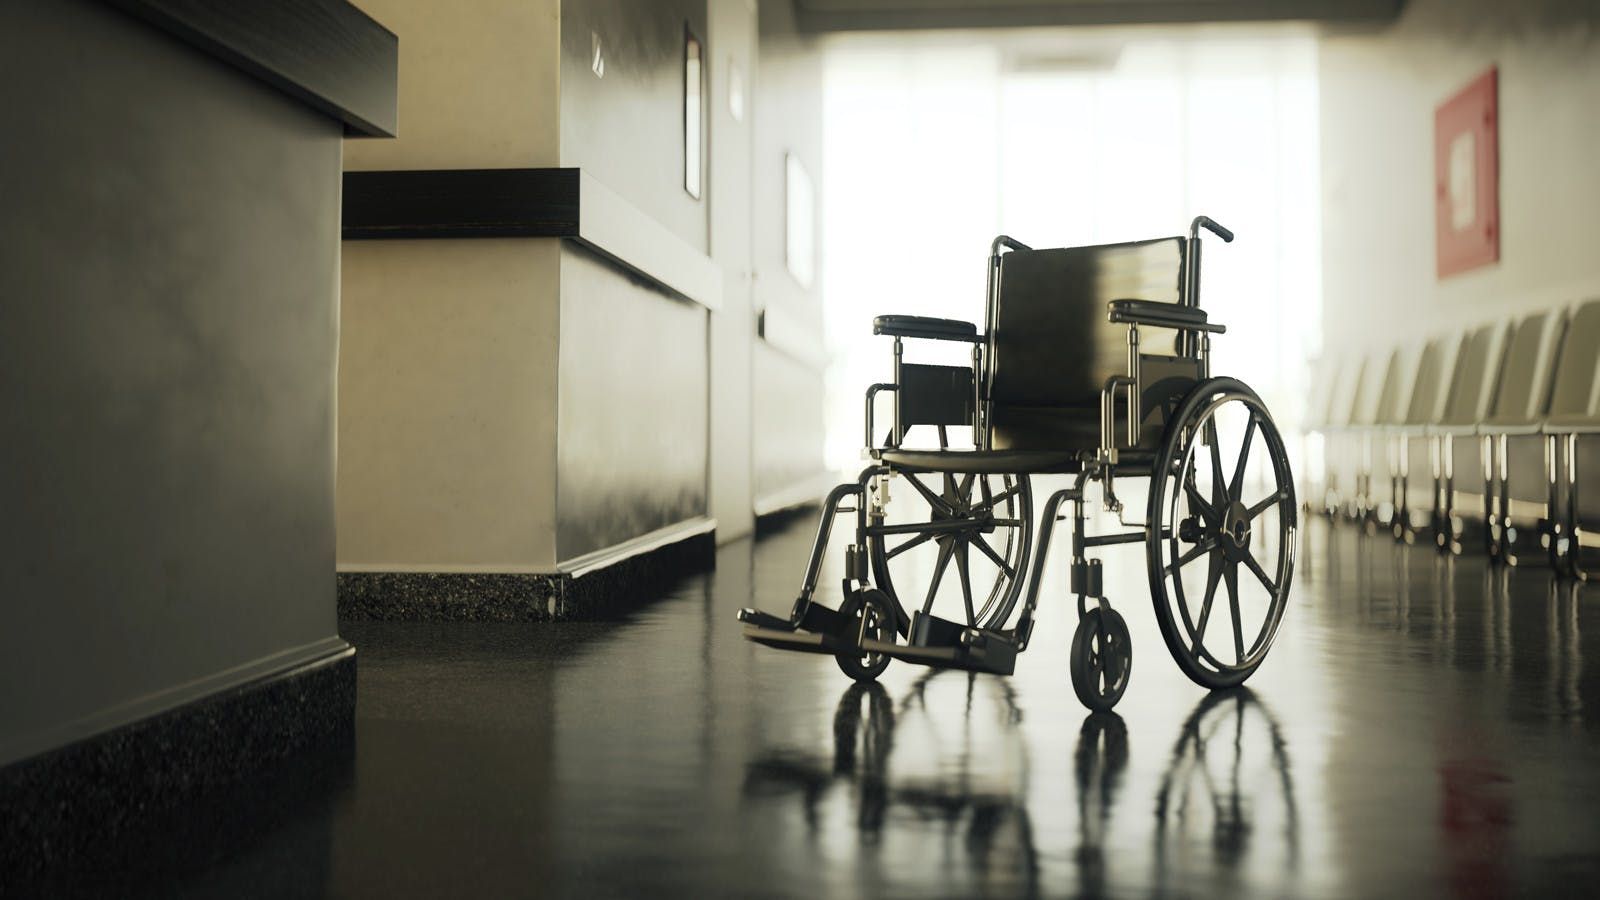 Снотворное помогло встать с инвалидной коляски и вернуло речь парализованному пациенту